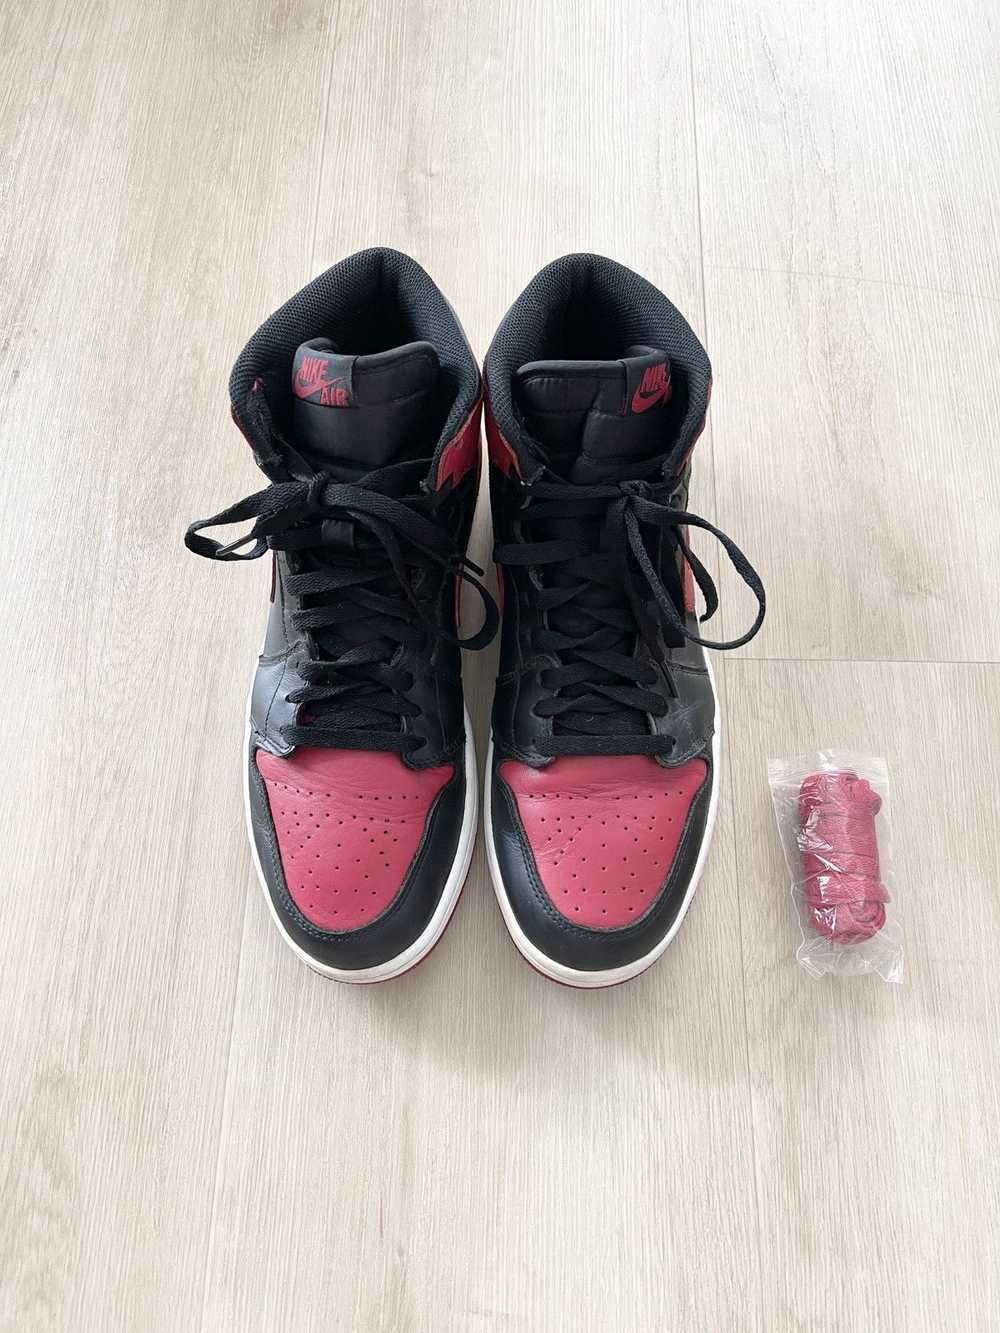 Jordan Brand STEAL! Nike Retro Air Jordan 1 Bred … - image 3